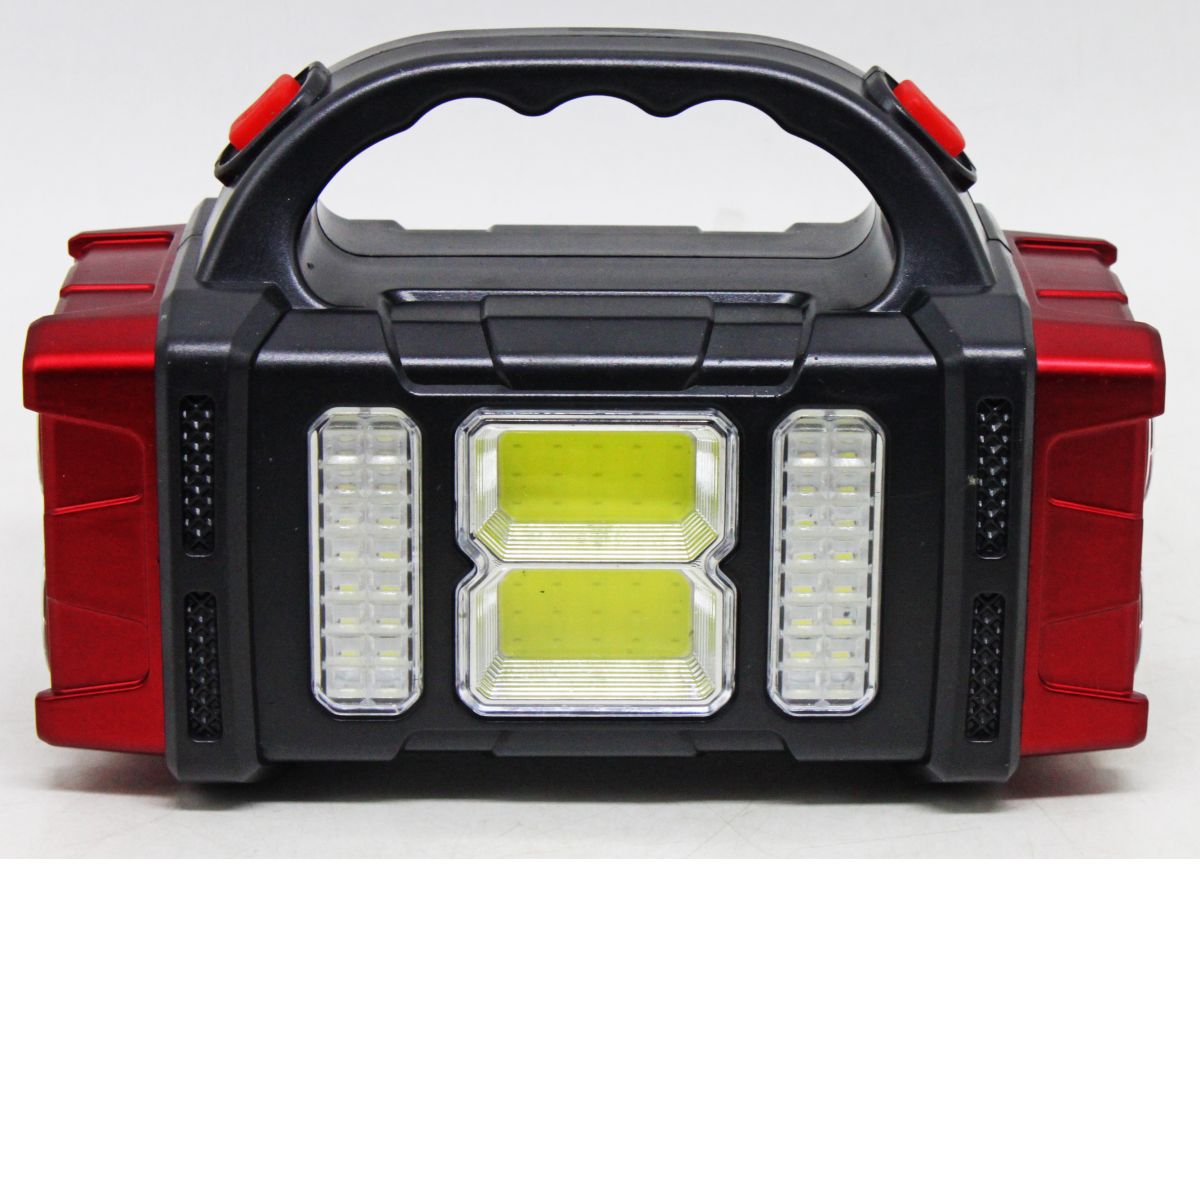 Ліхтар світлодіодний C 57239 (84) акумуляторний, 3 режими роботи, сонячна батарея, USB-кабель, зарядка для телефона, в коробці